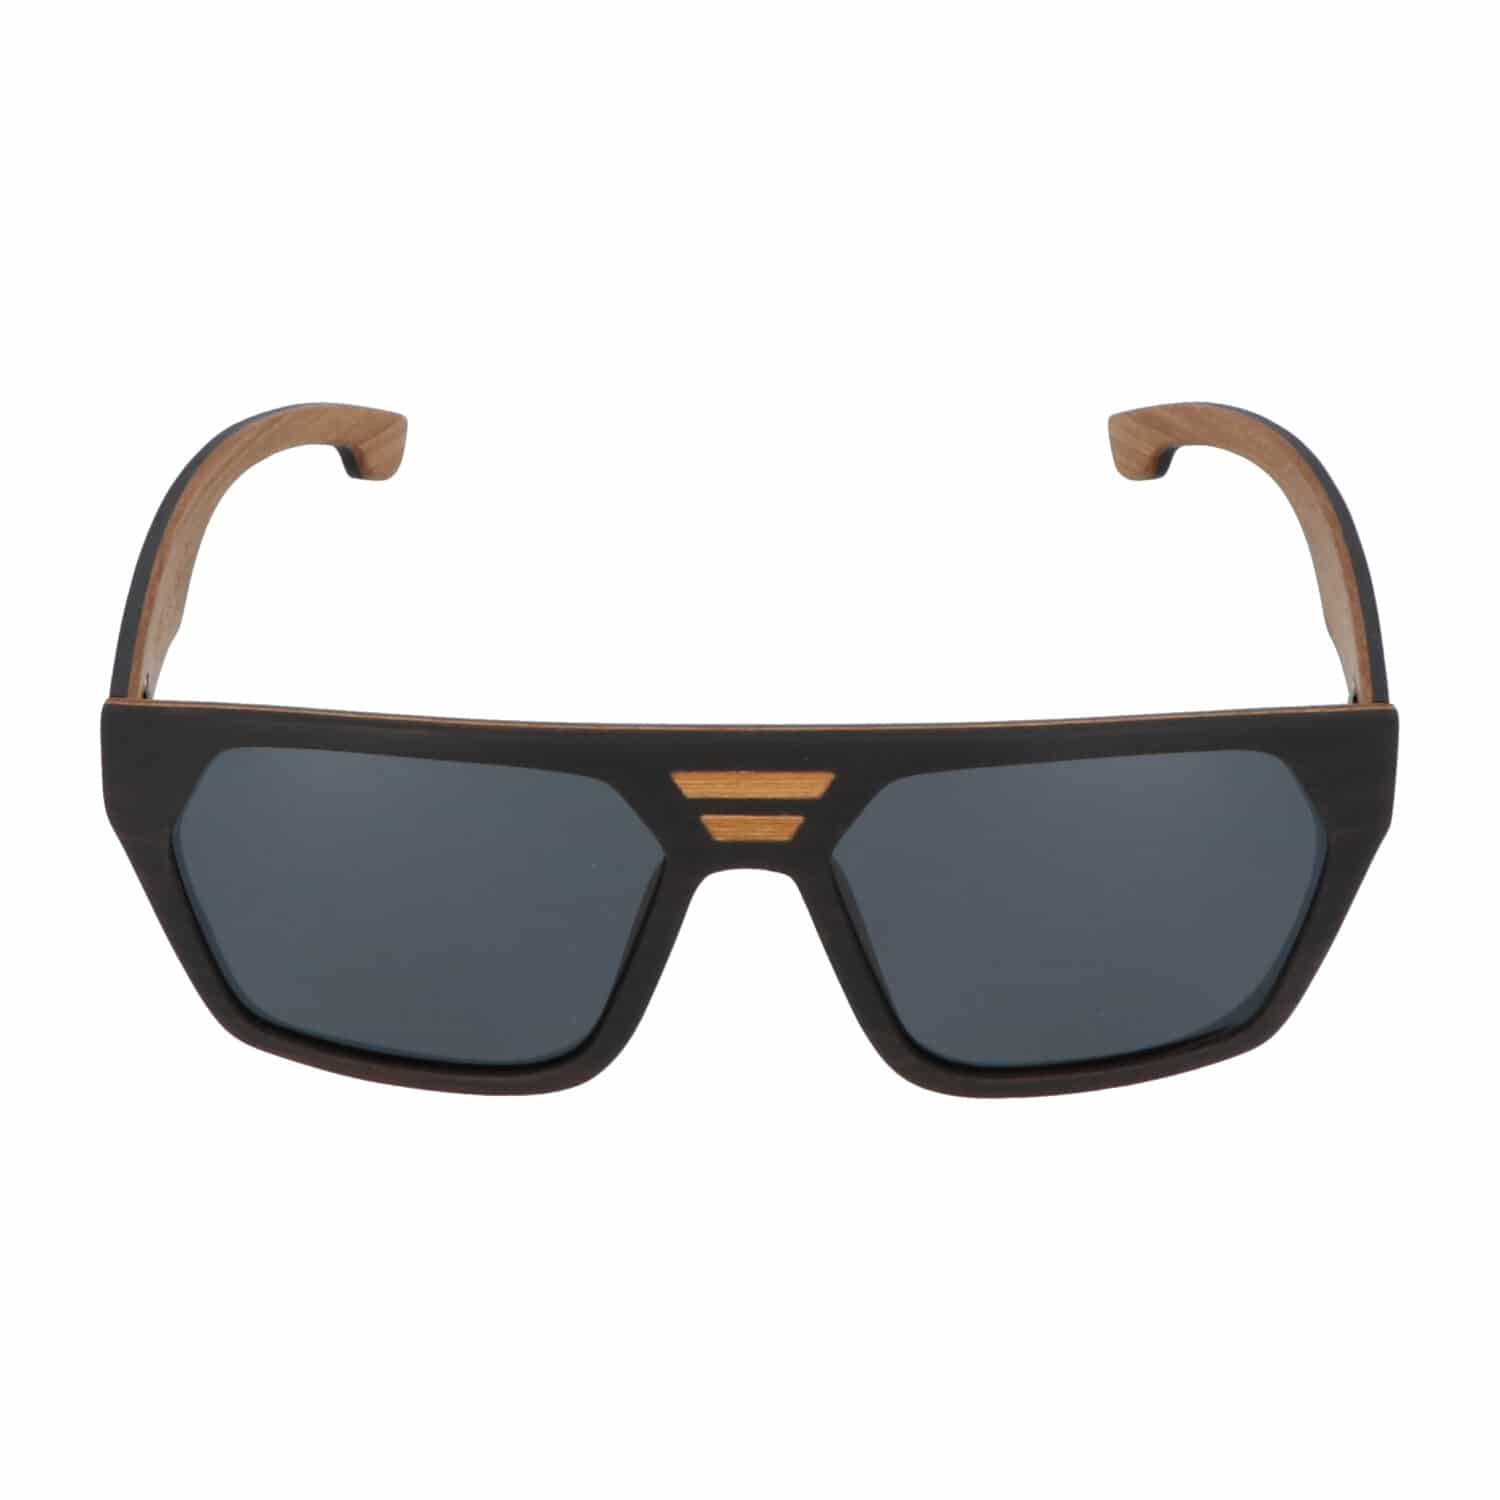 5one® Perugia Aviator 2.0 - Ebony/teak houten zonnebril - grijze lens